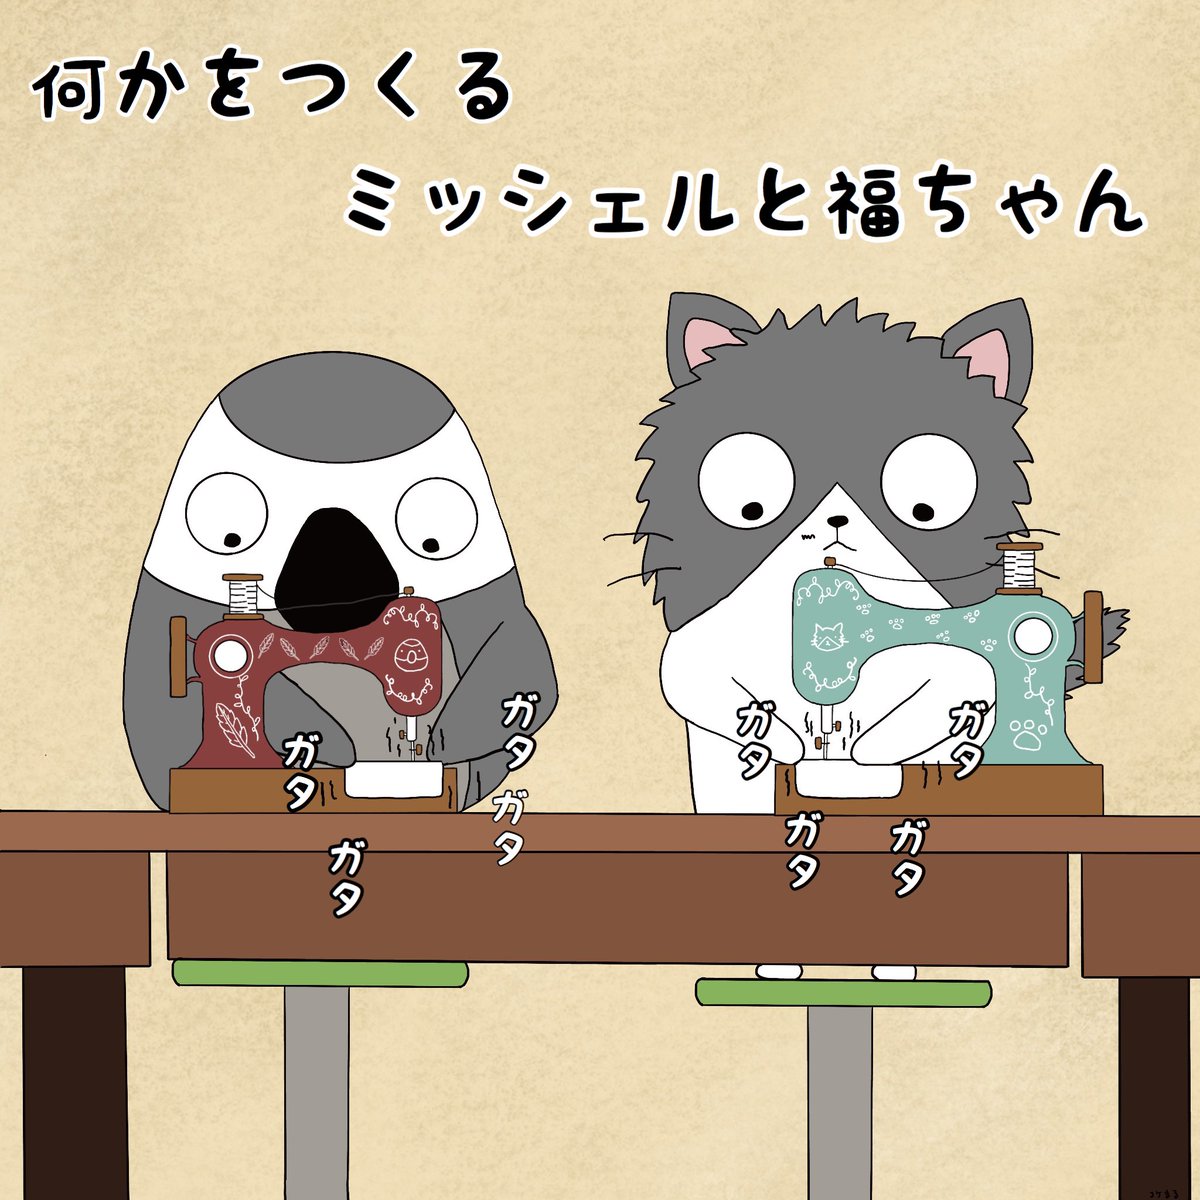 〜ミッシェル&福ちゃんマンガ〜
〜オリジナル〜

#漫画 #イラスト #猫 #ヨウム #ねこぜ家 